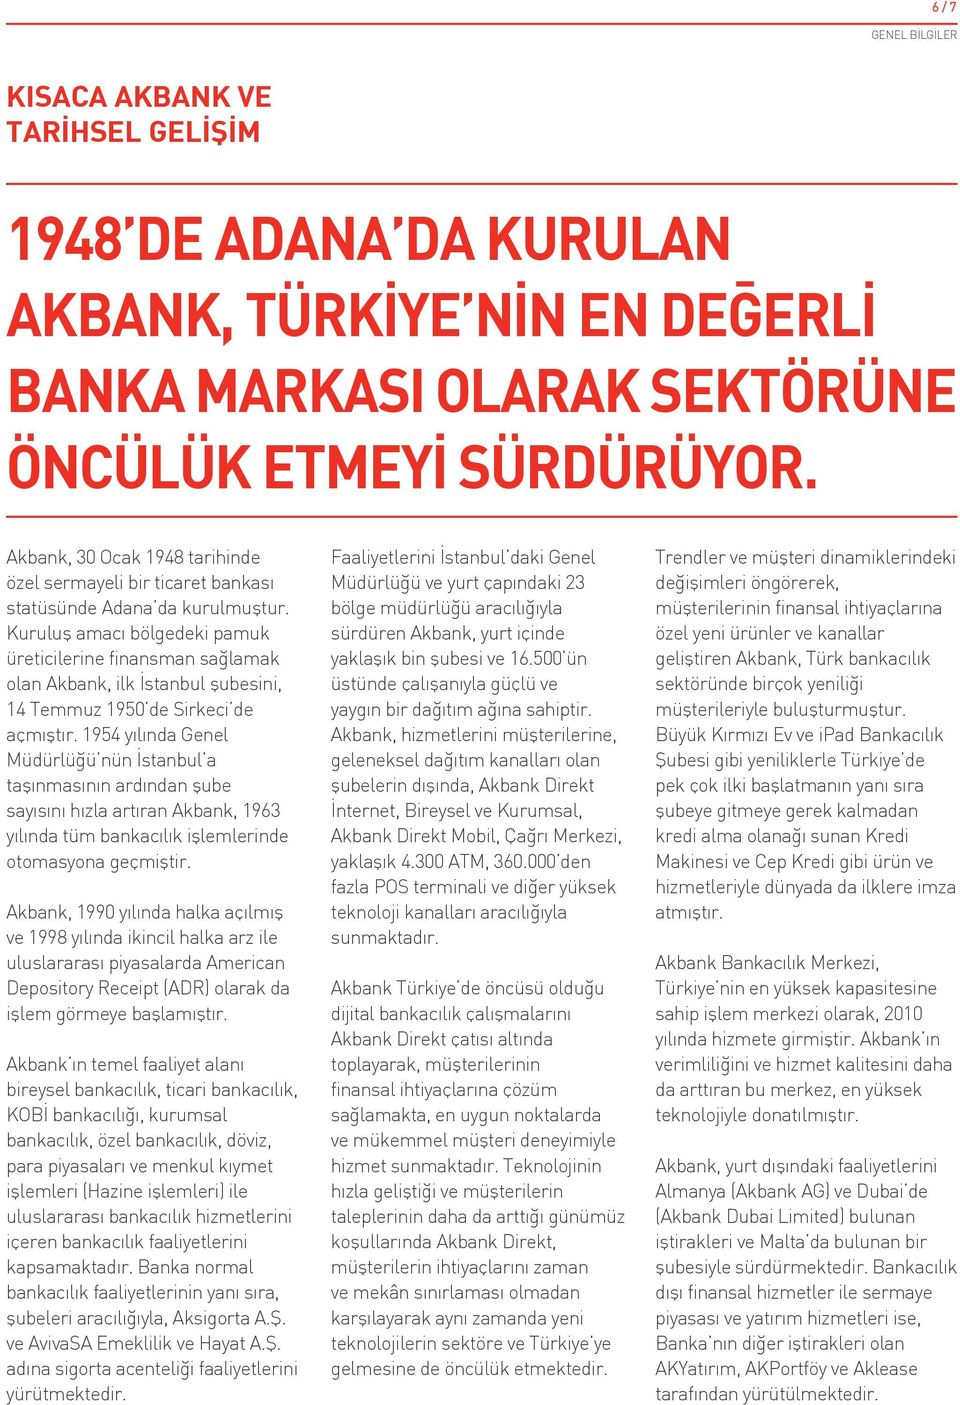 Kuruluş amacı bölgedeki pamuk üreticilerine finansman sağlamak olan Akbank, ilk İstanbul şubesini, 14 Temmuz 1950 de Sirkeci de açmıştır.